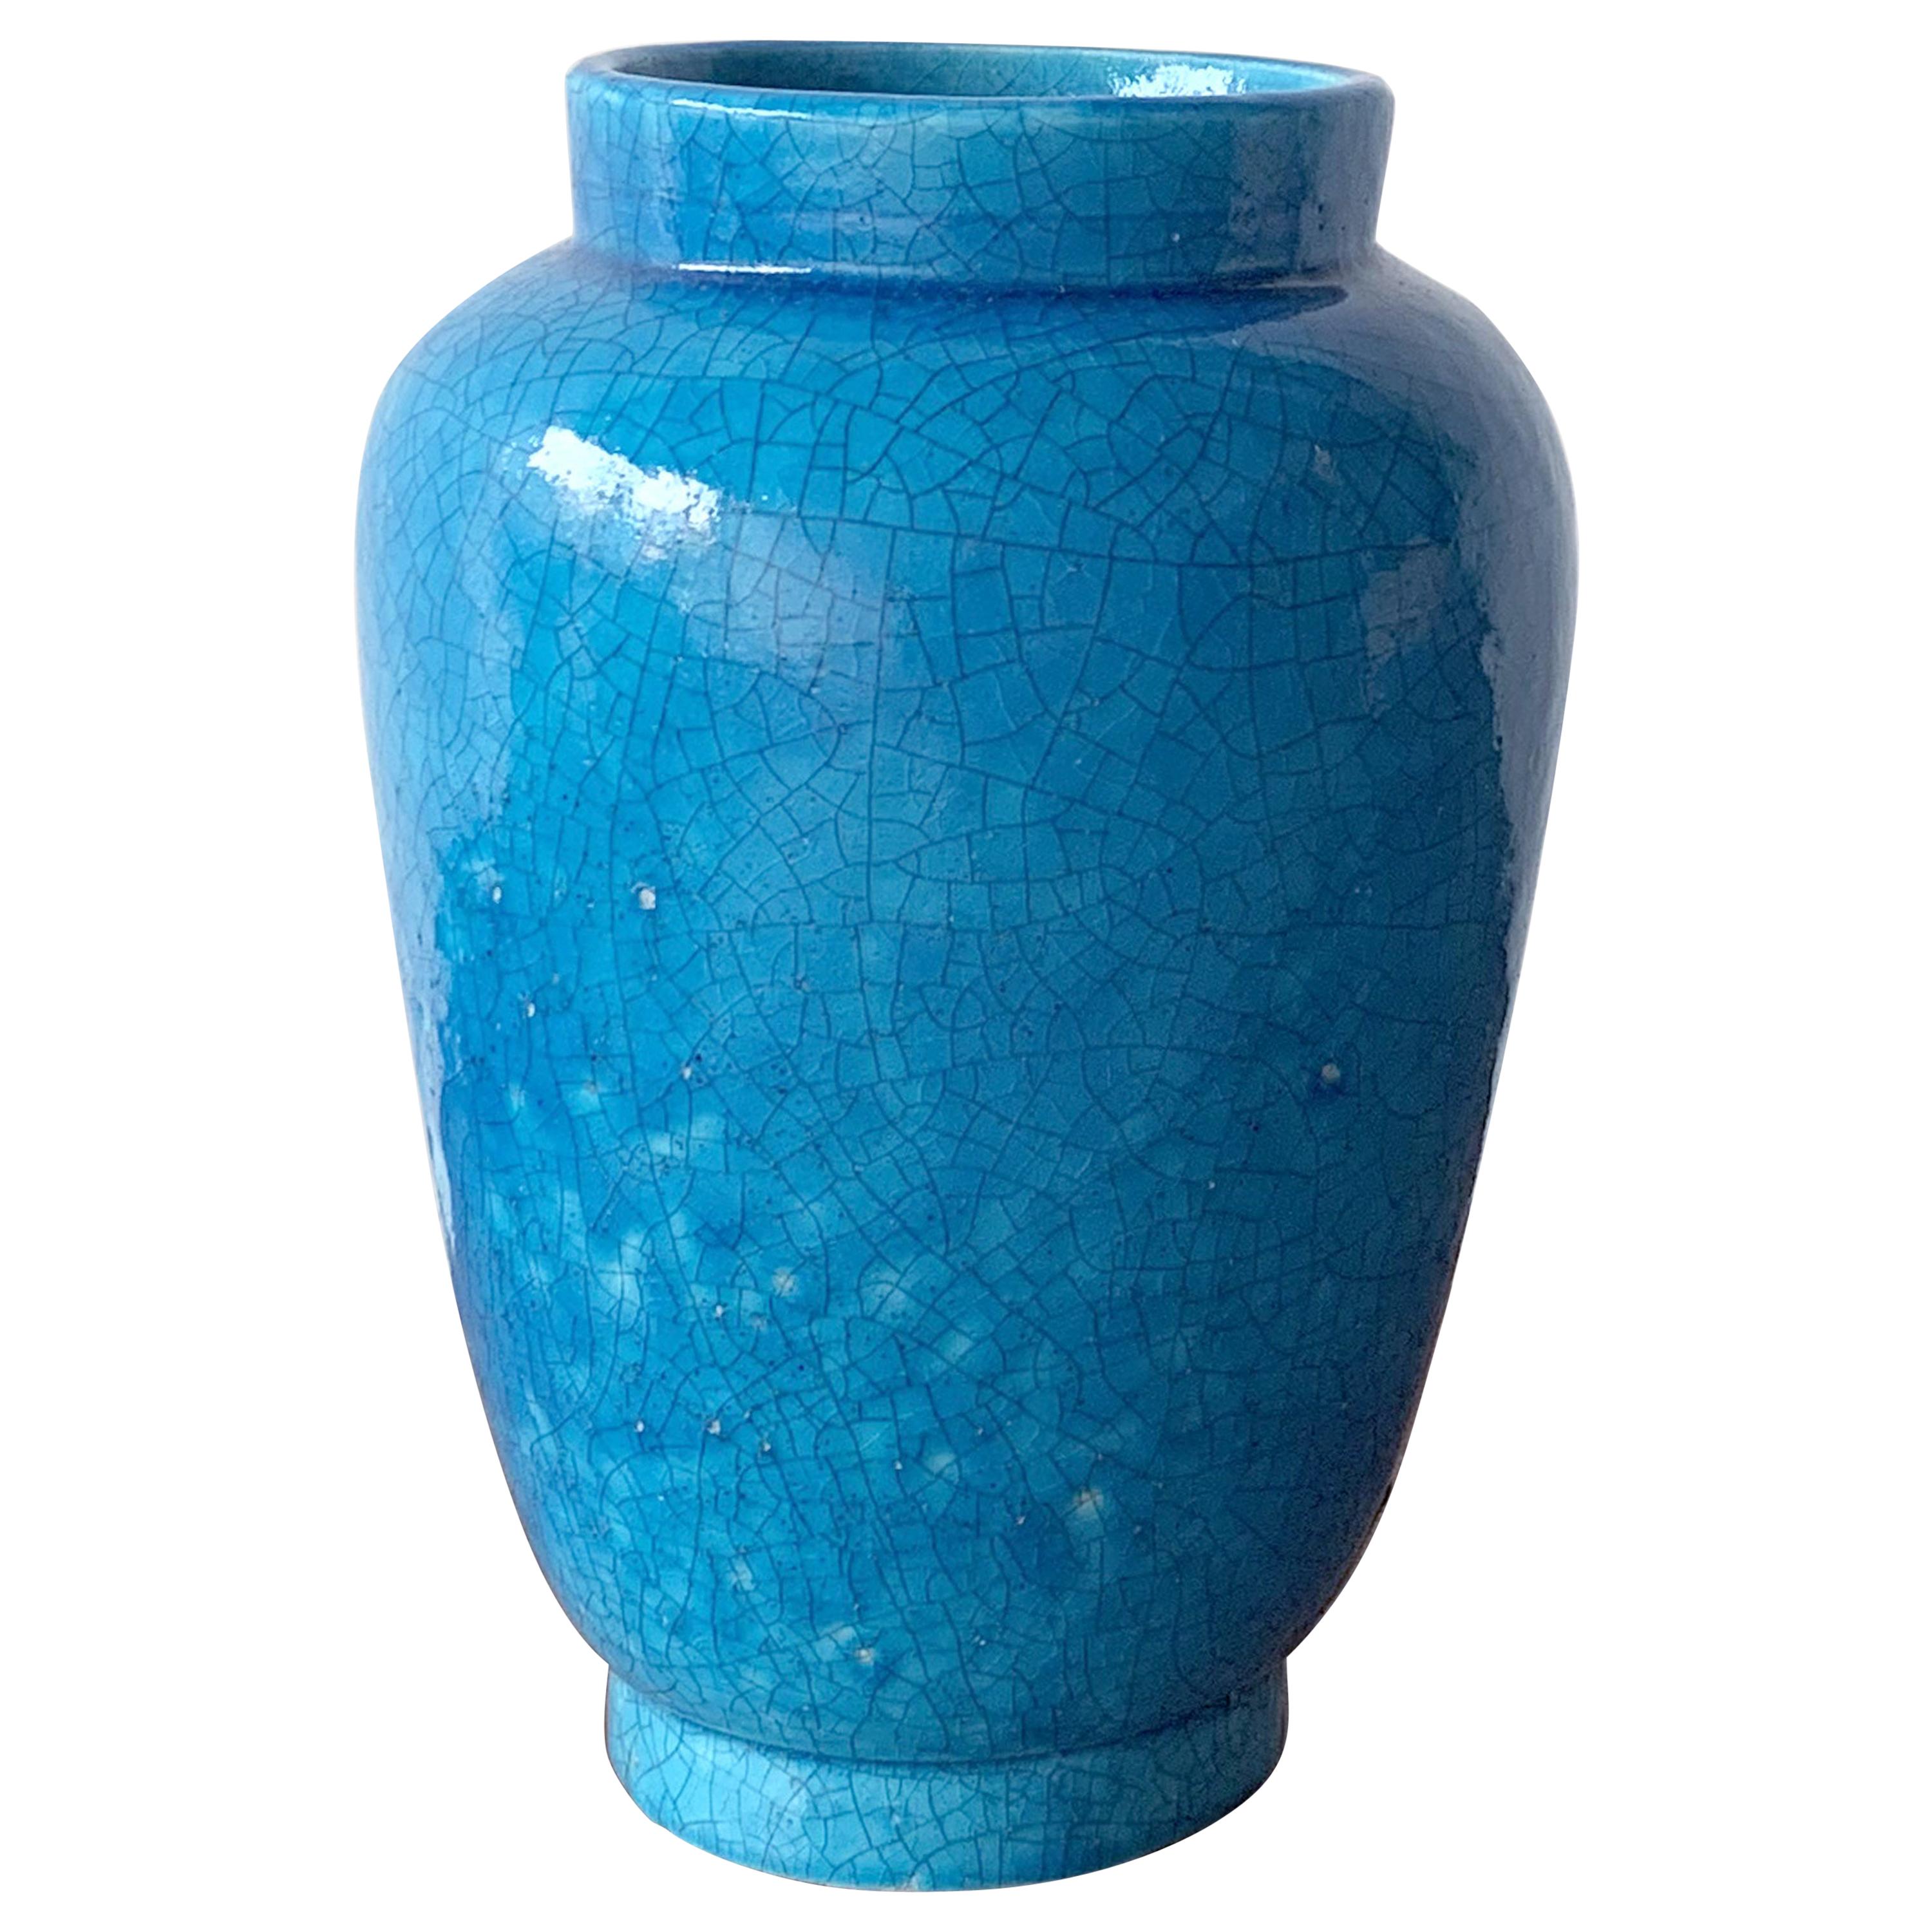 Raoul Lachenal Ceramic Vase For Sale